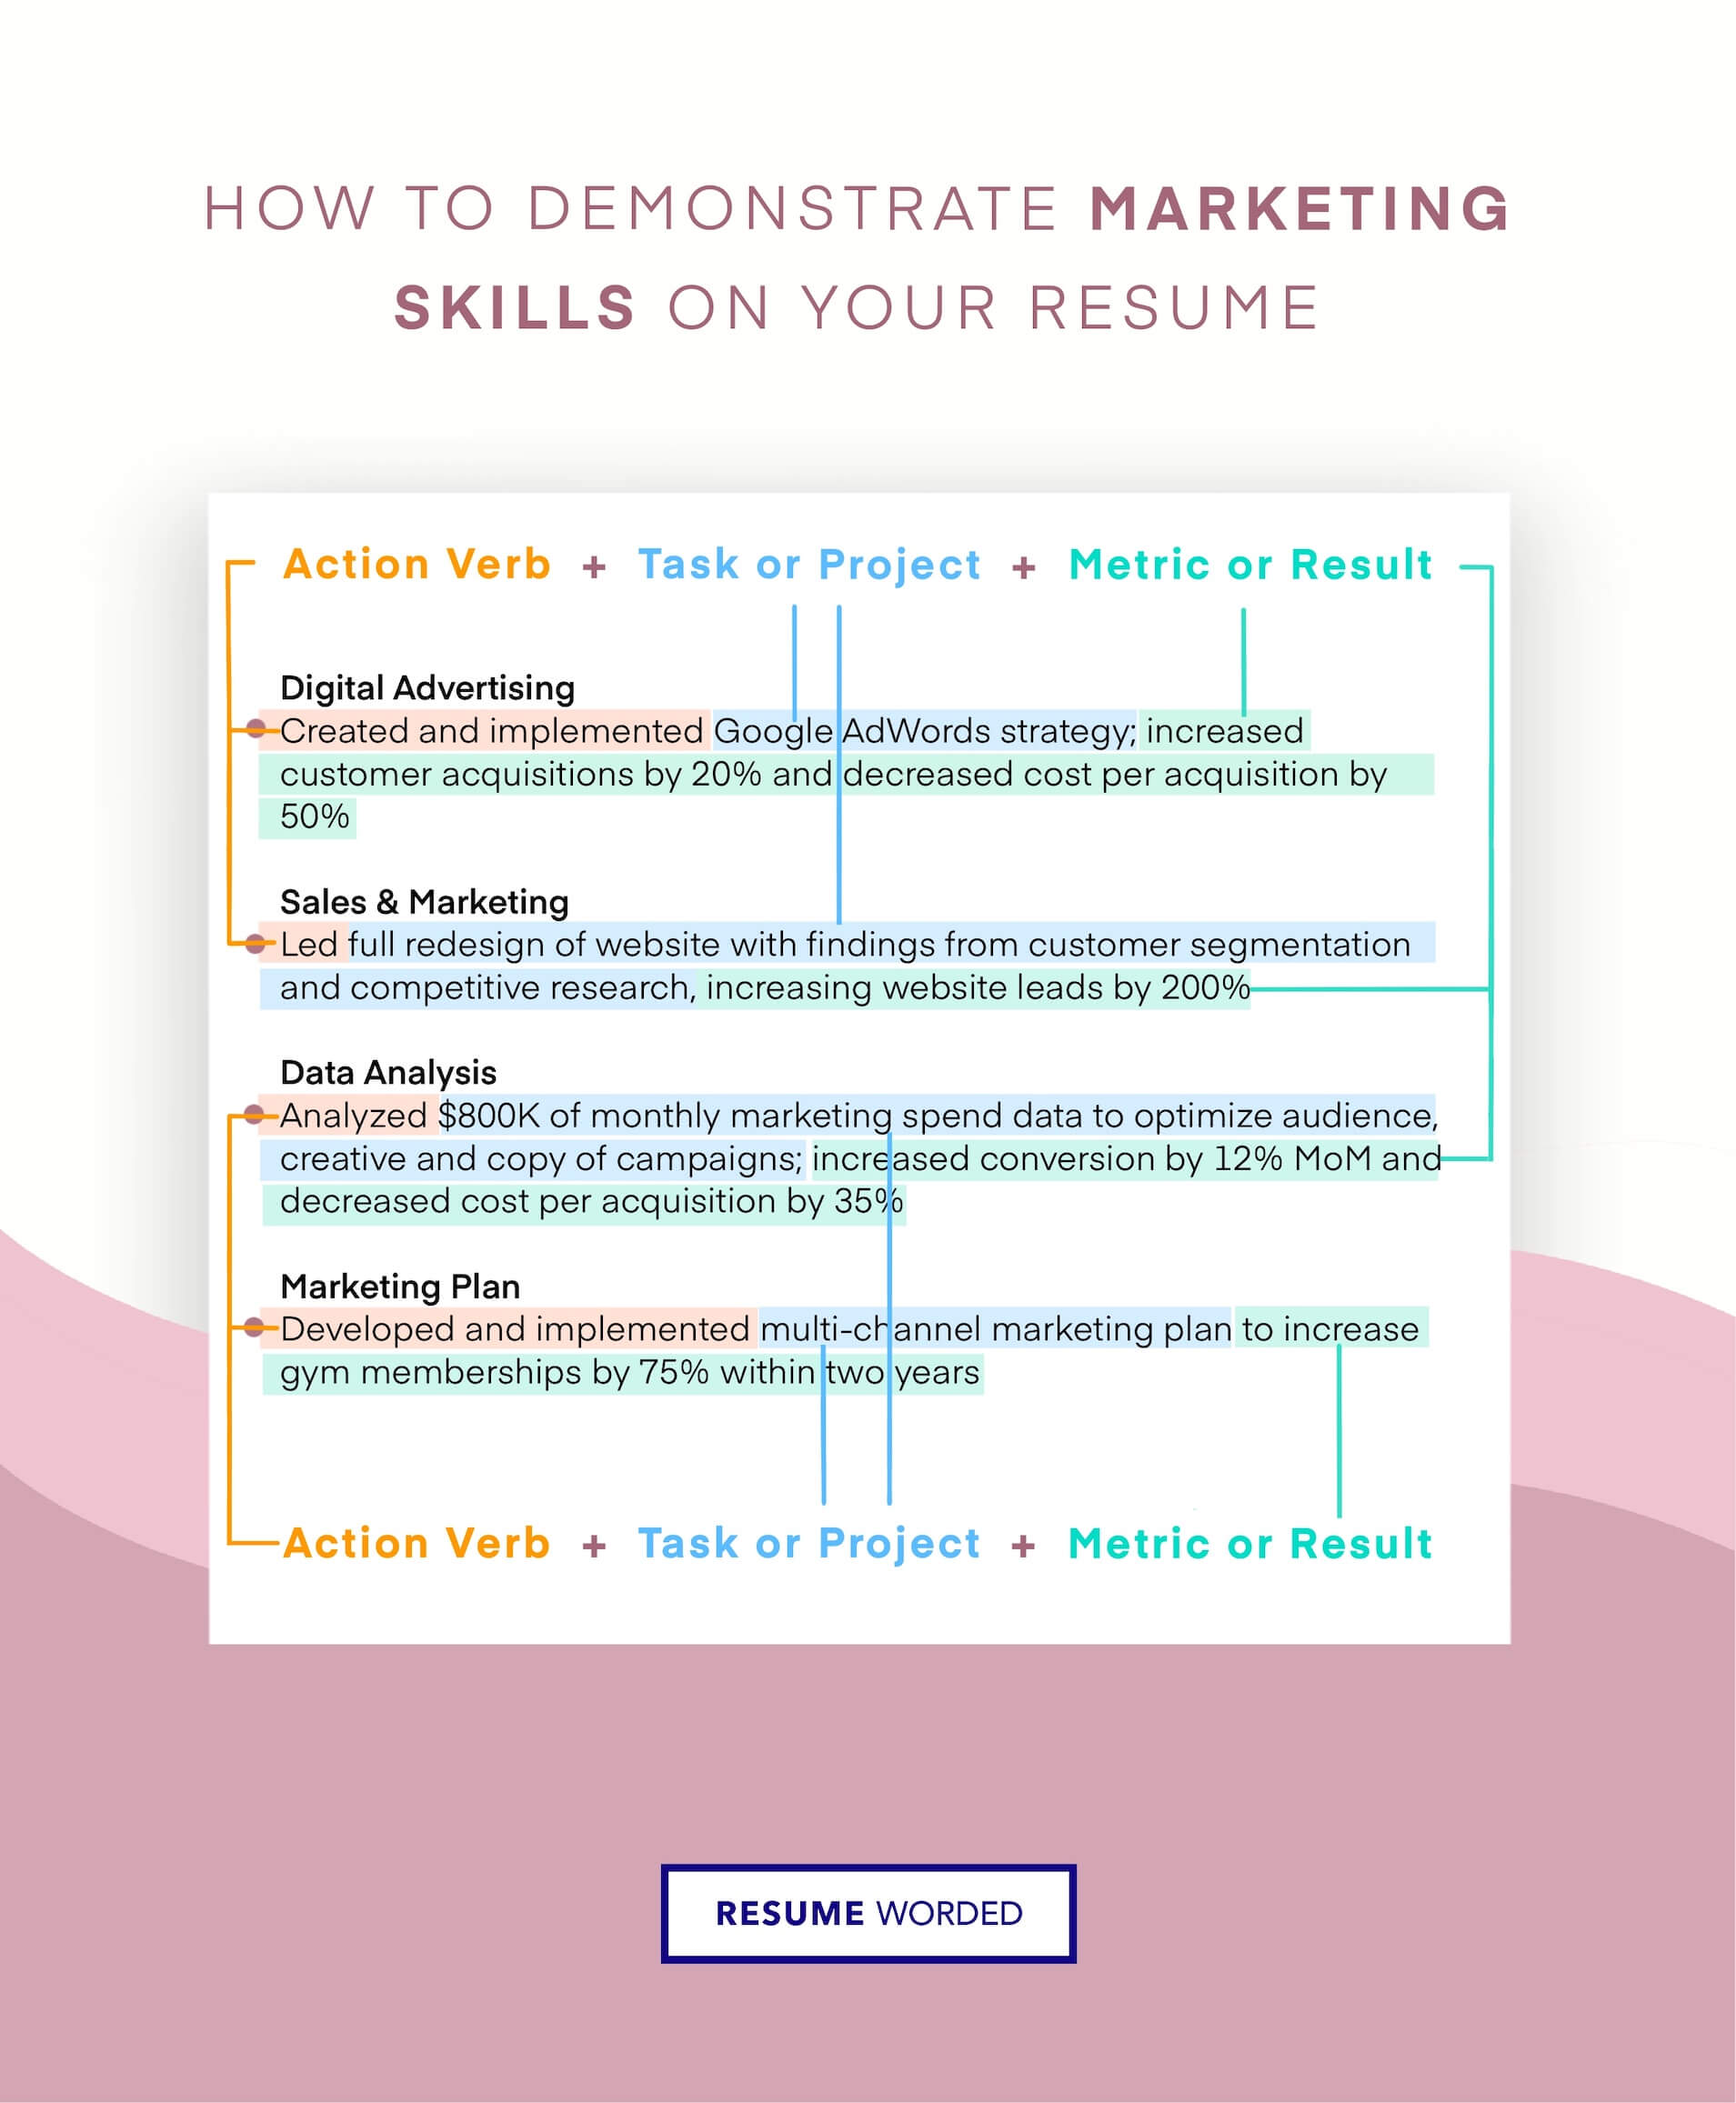 Demonstrate Mastery of Digital Marketing Tools - Digital Marketing Specialist CV